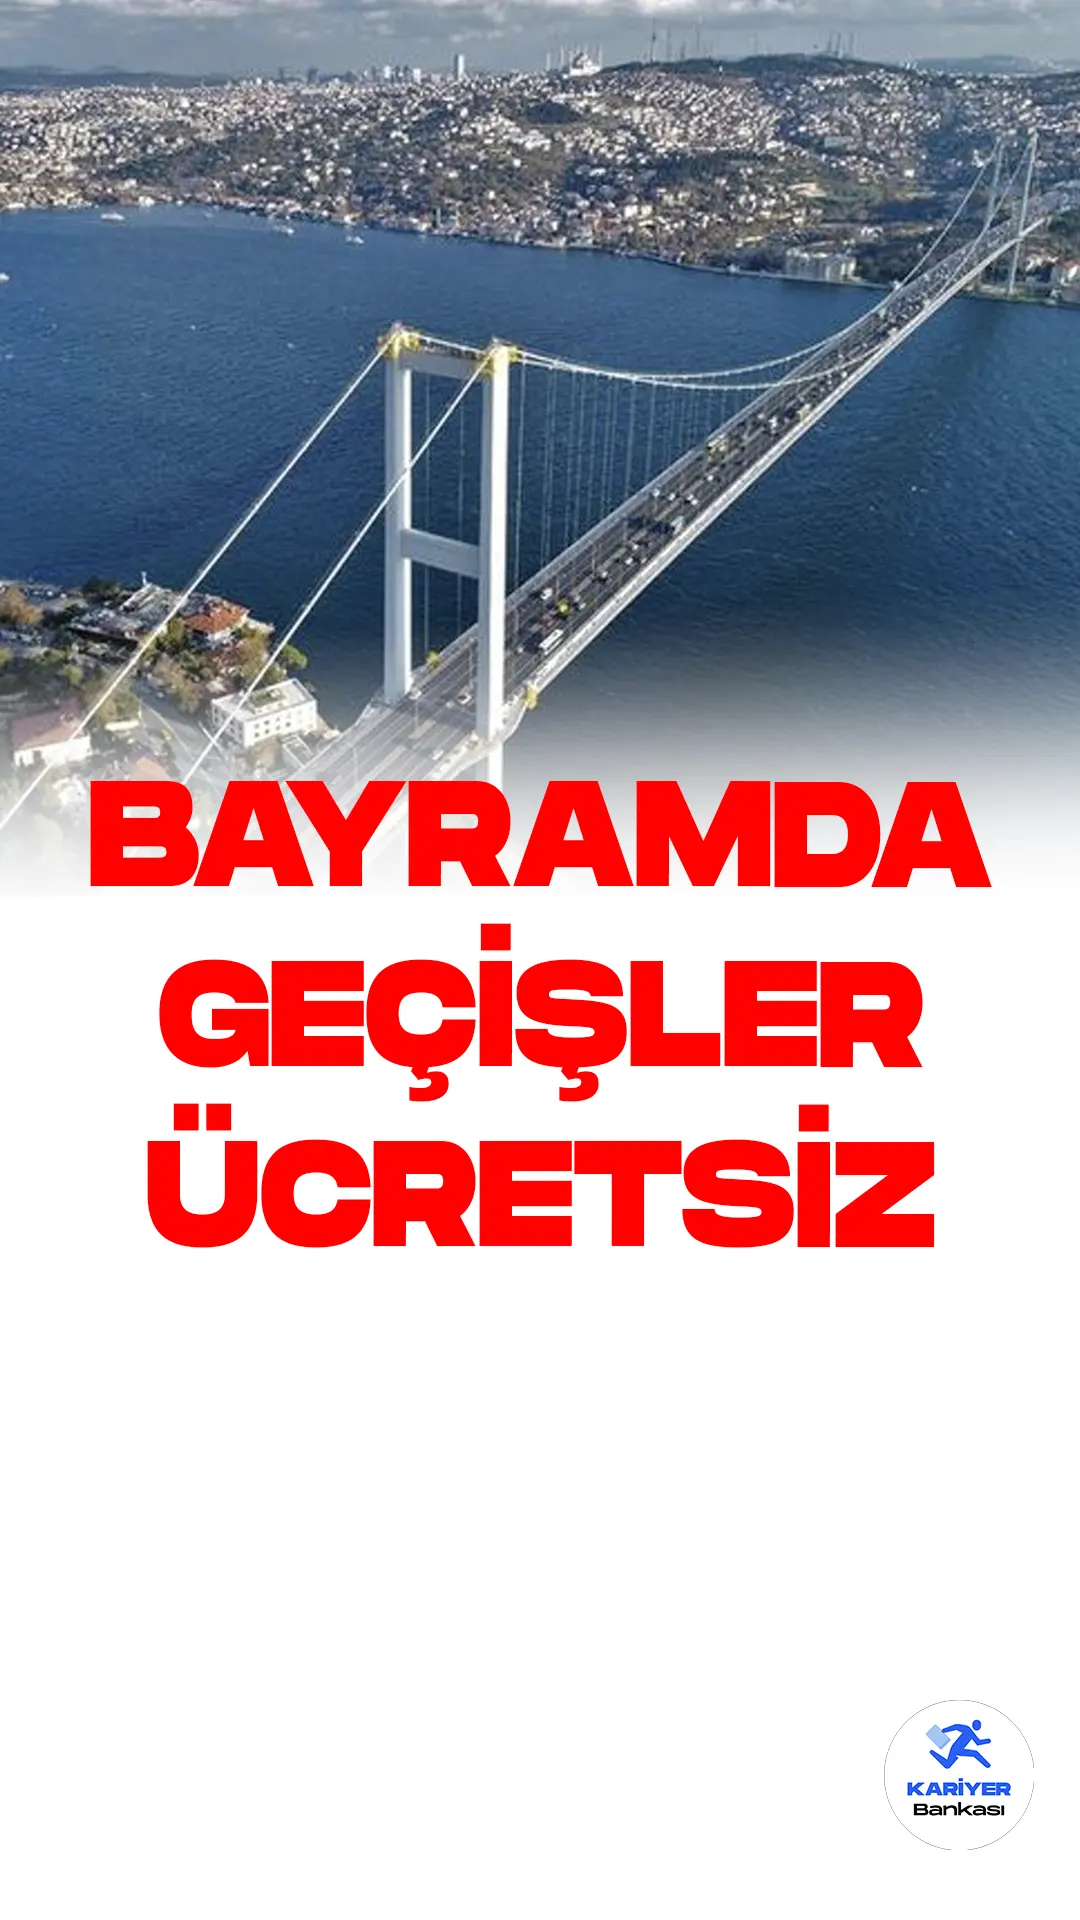 Kurban Bayramı Tatilinde Devlet İşletmesindeki Köprü ve Otoyollar Ücretsiz Olacak.Cumhurbaşkanı Recep Tayyip Erdoğan, Kurban Bayramı tatili süresince devlet işletmesindeki köprü ve otoyolların ücretsiz olacağını duyurdu. Bu karar, 24 Haziran gece yarısı başlayacak ve 3 Temmuz Pazartesi saat 07.00'ye kadar geçerli olacak. Başkentray, Marmaray ve İZBAN seferleri de bayram boyunca ücretsiz olacak.